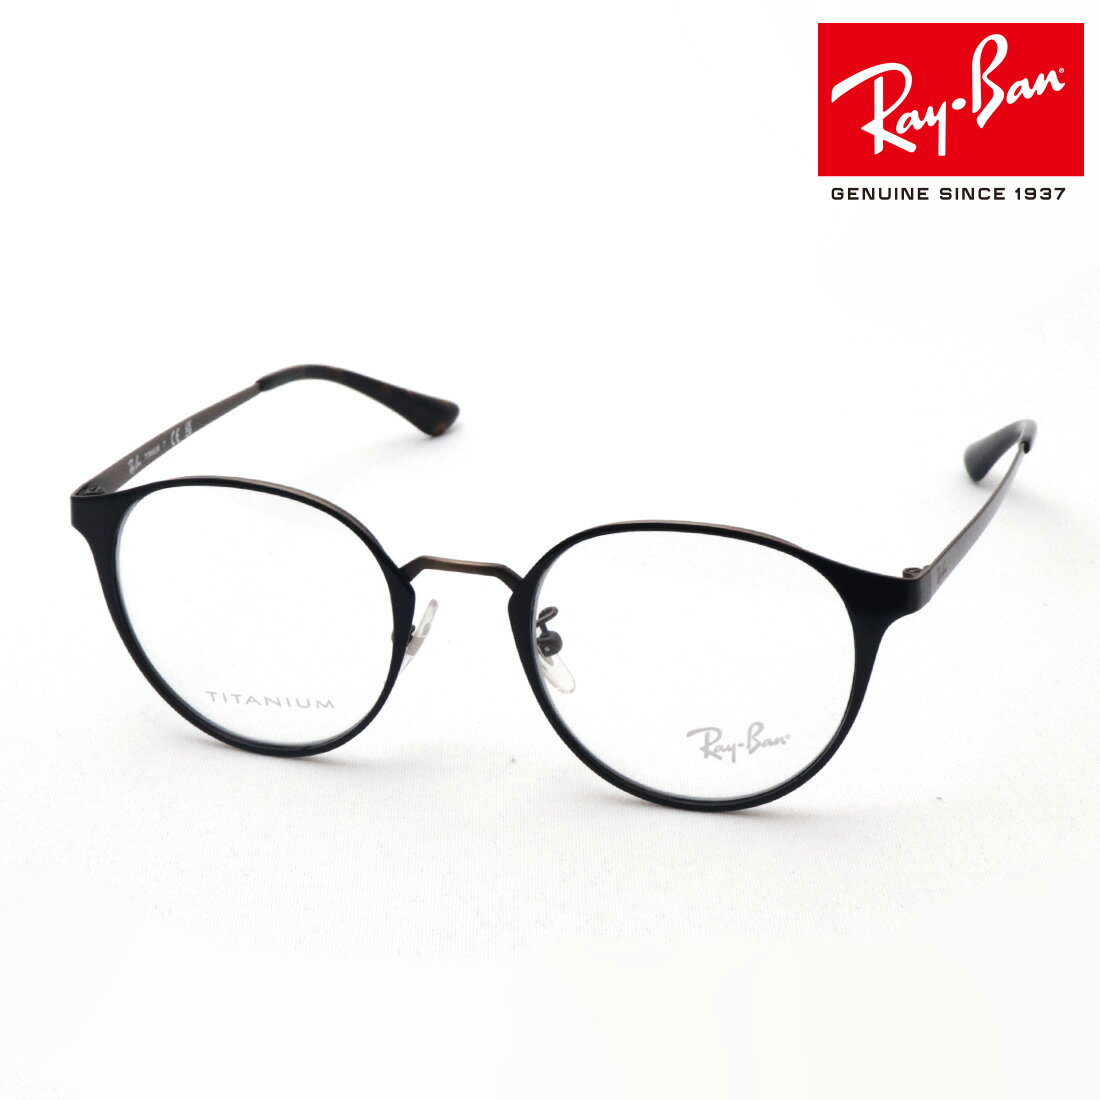 レイバン メガネ メンズ 正規レイバン日本最大級の品揃え レイバン メガネ フレーム TITANIUM チタニウム Ray-Ban RX8770D 3151 伊達メガネ 度付き ブルーライト カット 眼鏡 メタル RayBan ボストン ブラック系